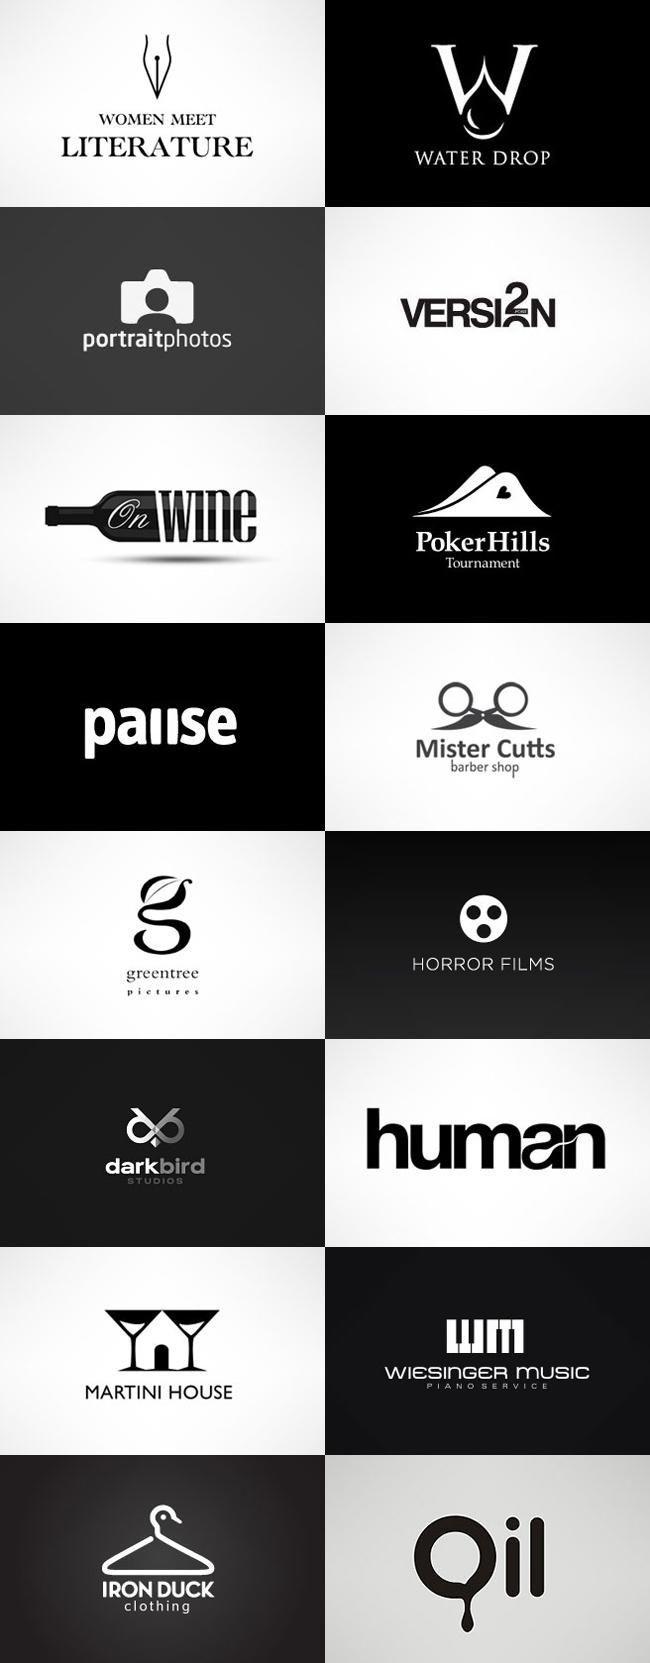 De Logo - grafiker.de - Logo-Inspiration: Black & White | LOGO | Pinterest ...